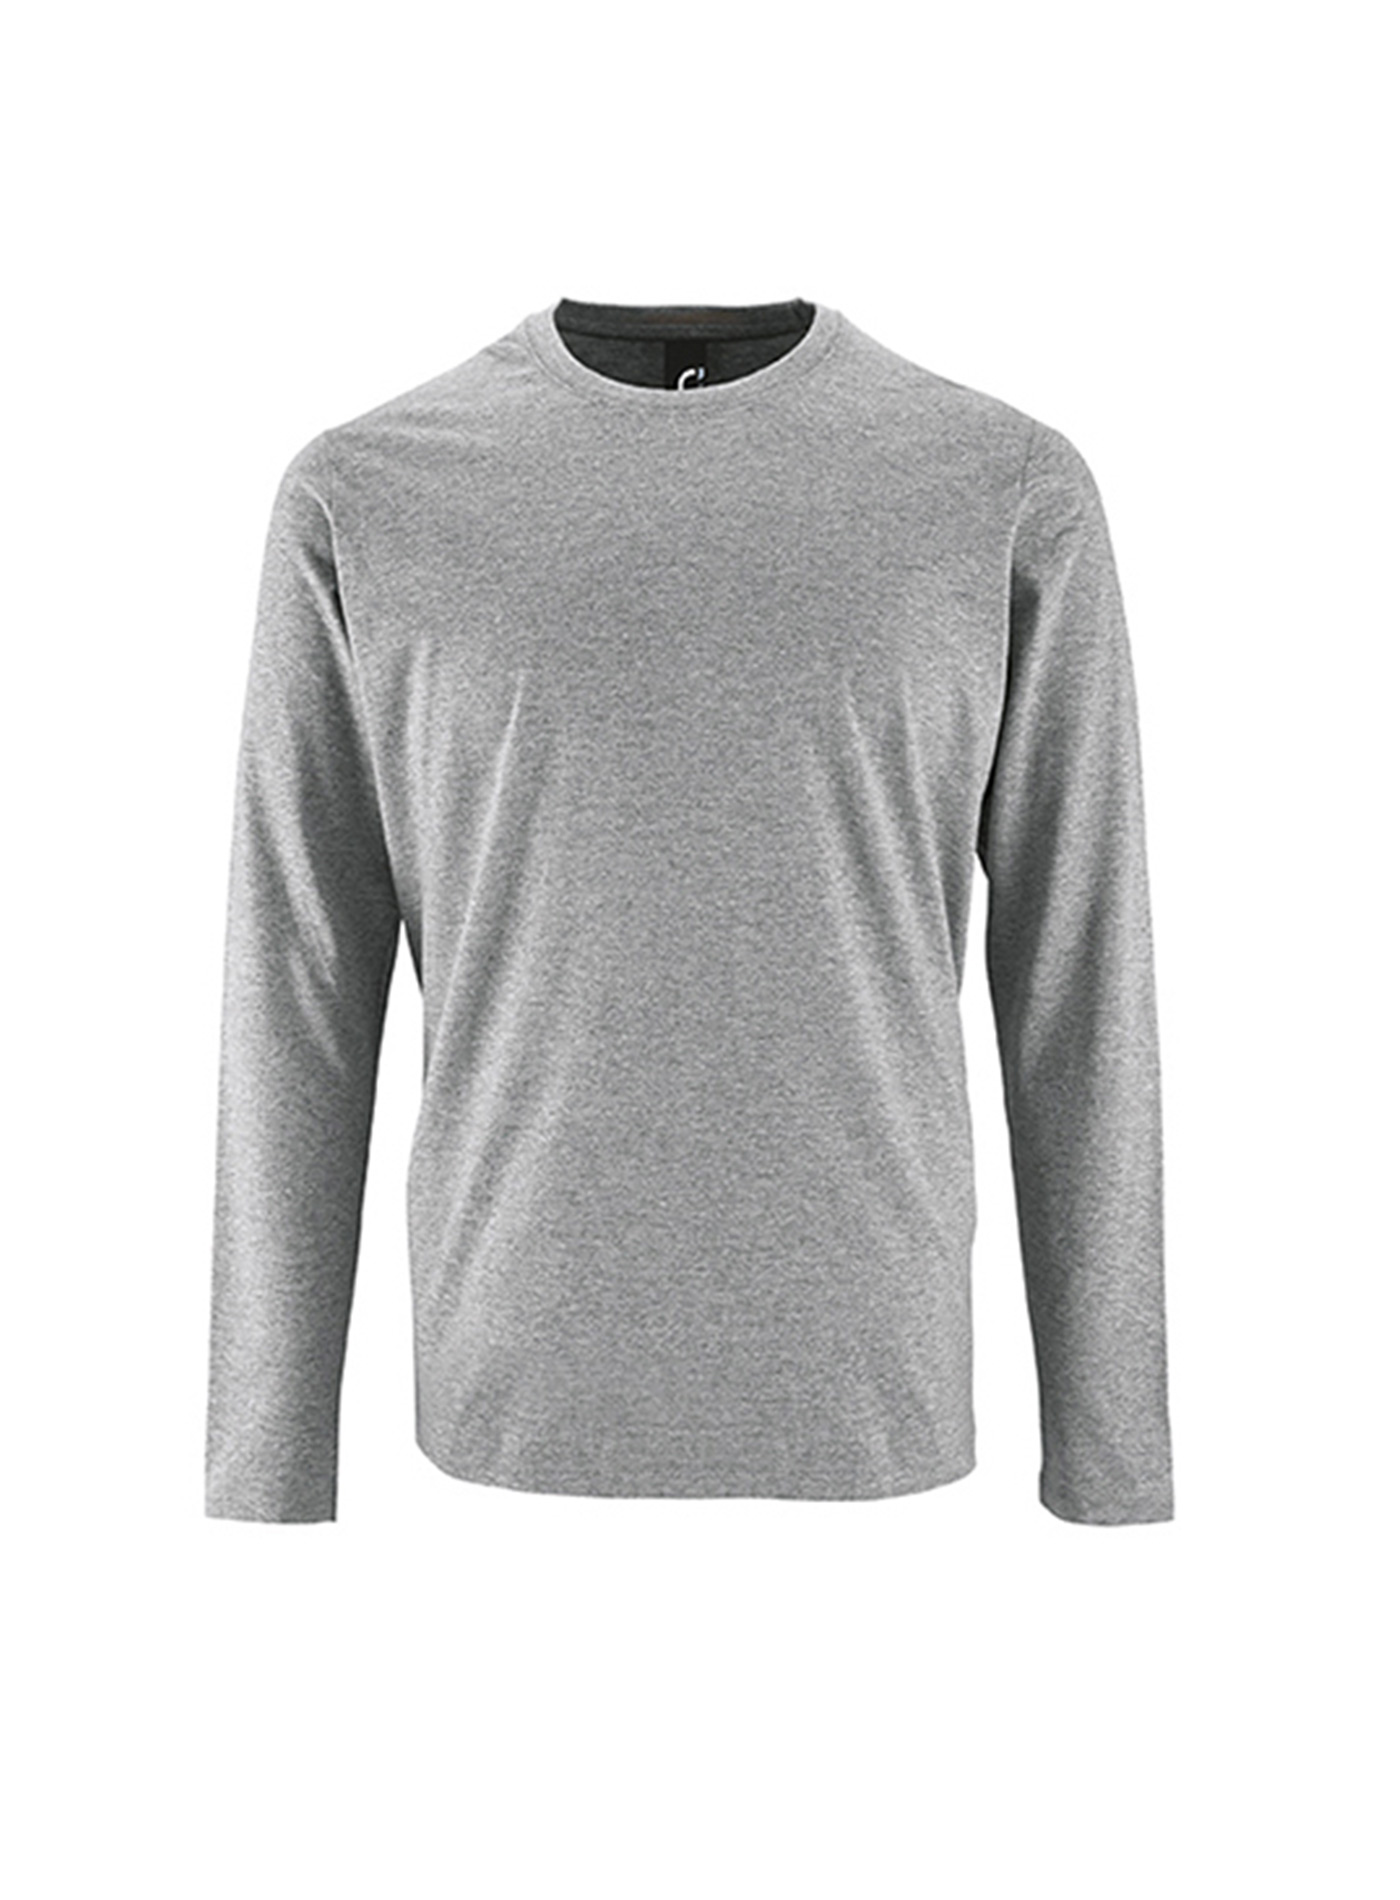 Pánské tričko s dlouhým rukávem SOL´S Imperial - Světle šedý melír M